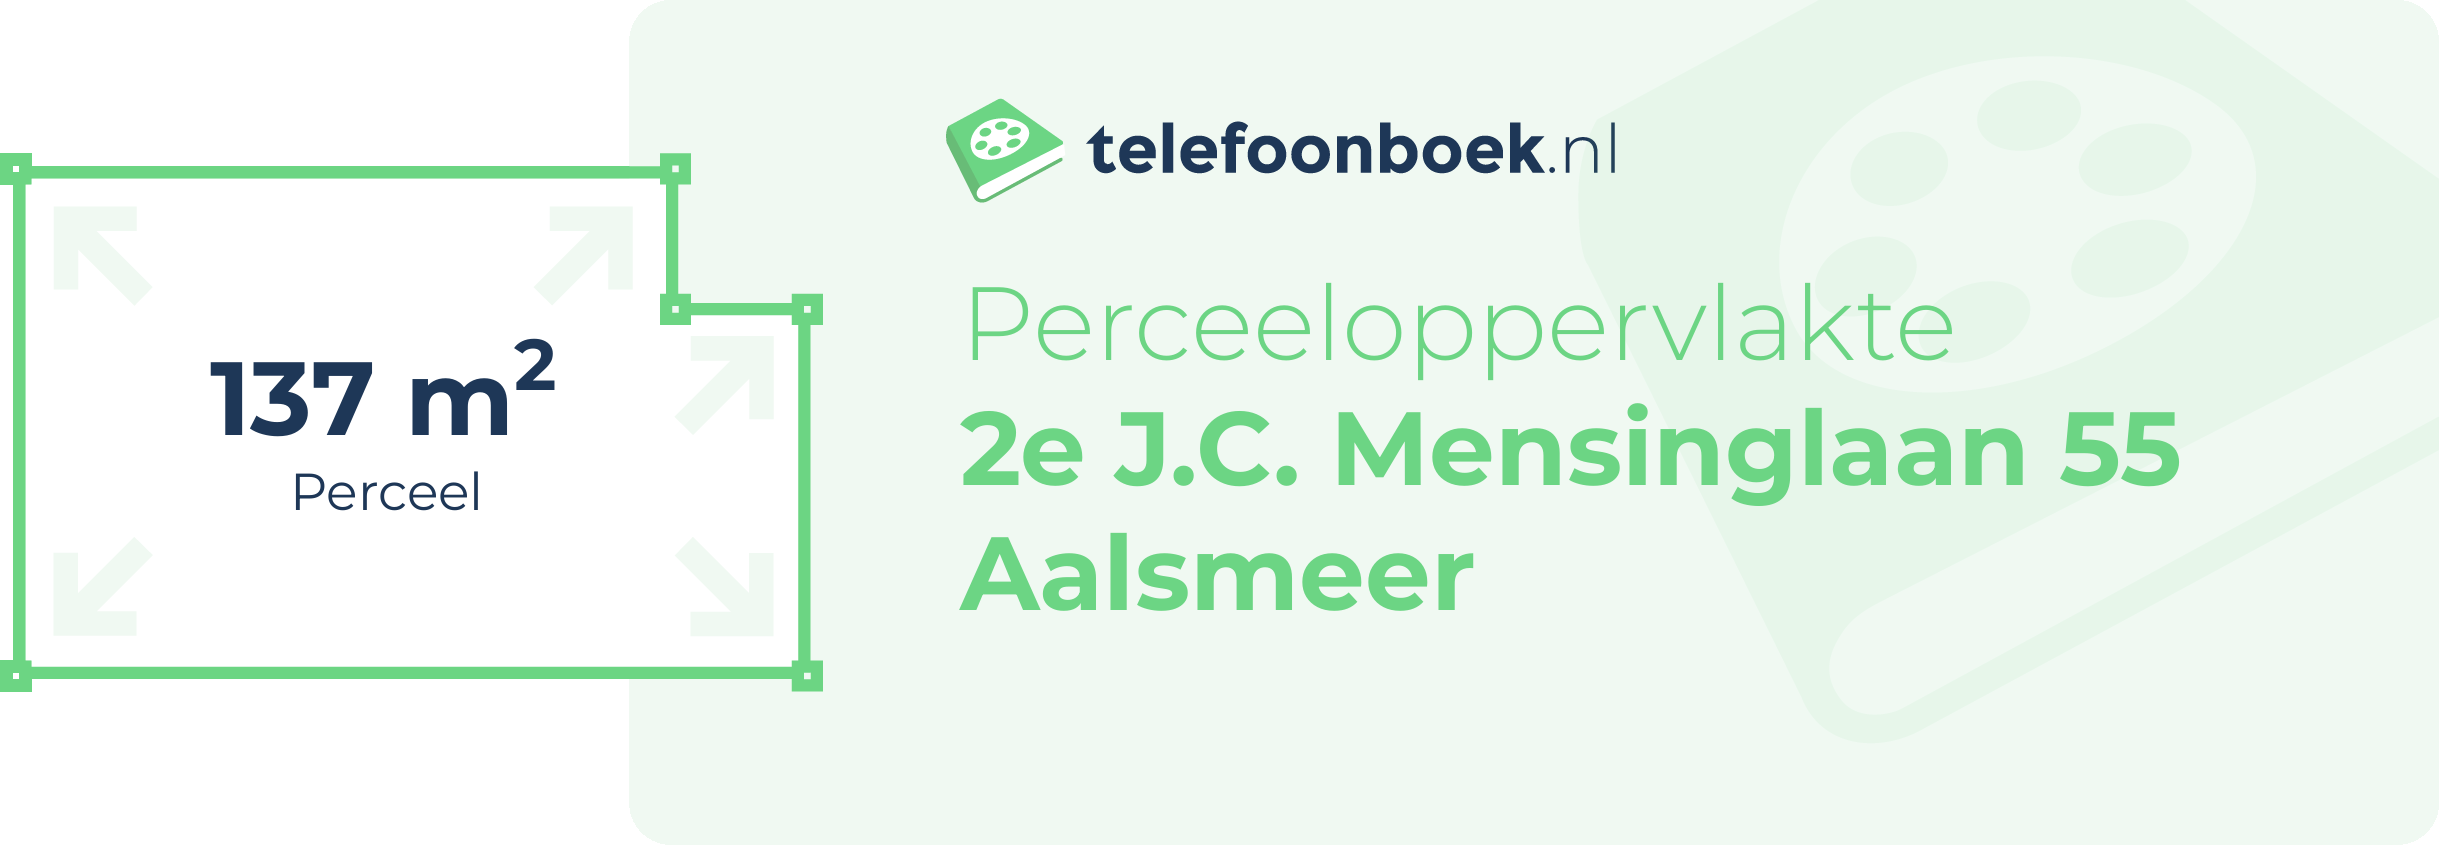 Perceeloppervlakte 2e J.C. Mensinglaan 55 Aalsmeer